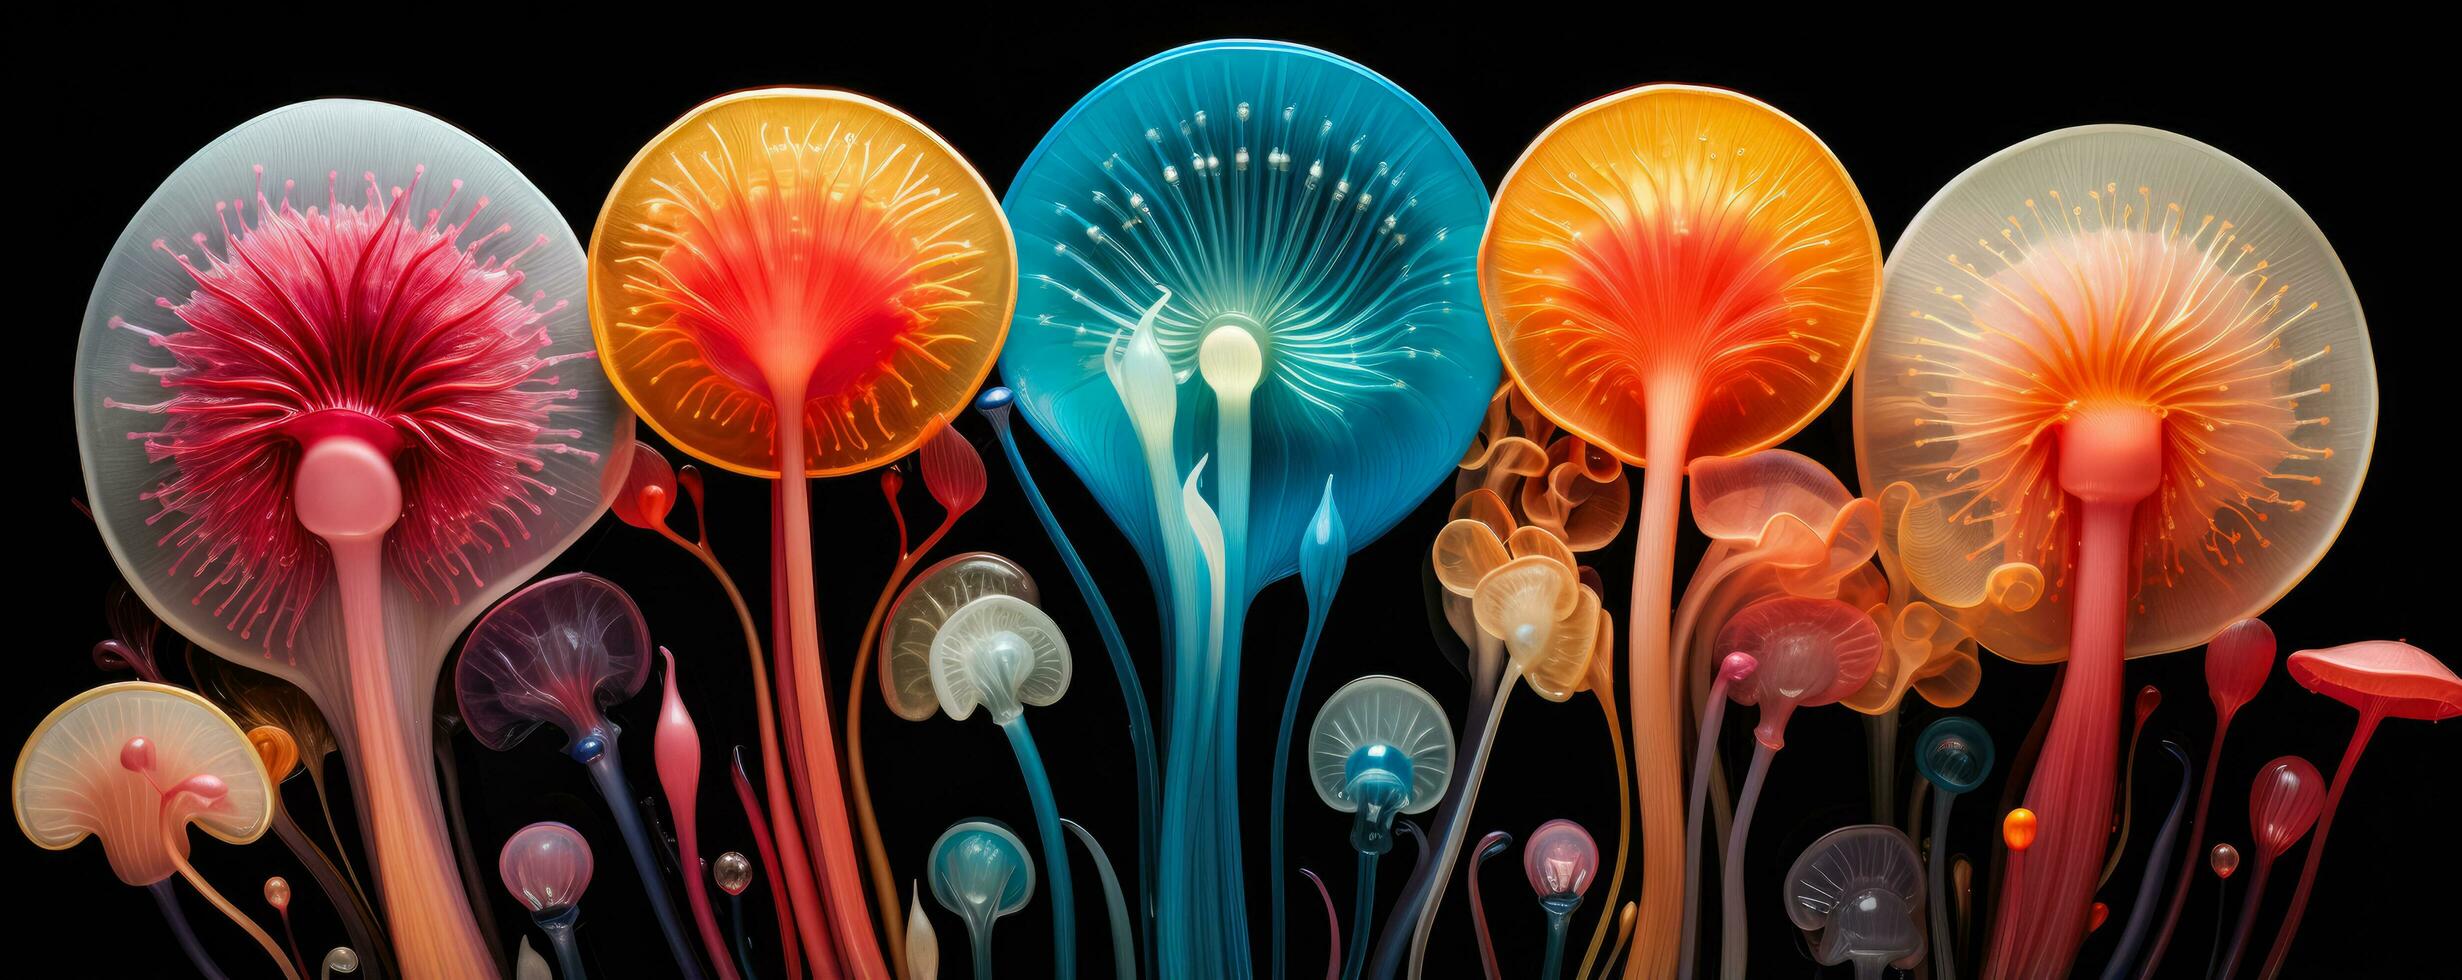 microscopique organismes transformé dans vibrant psychédélique abstrait dessins photo